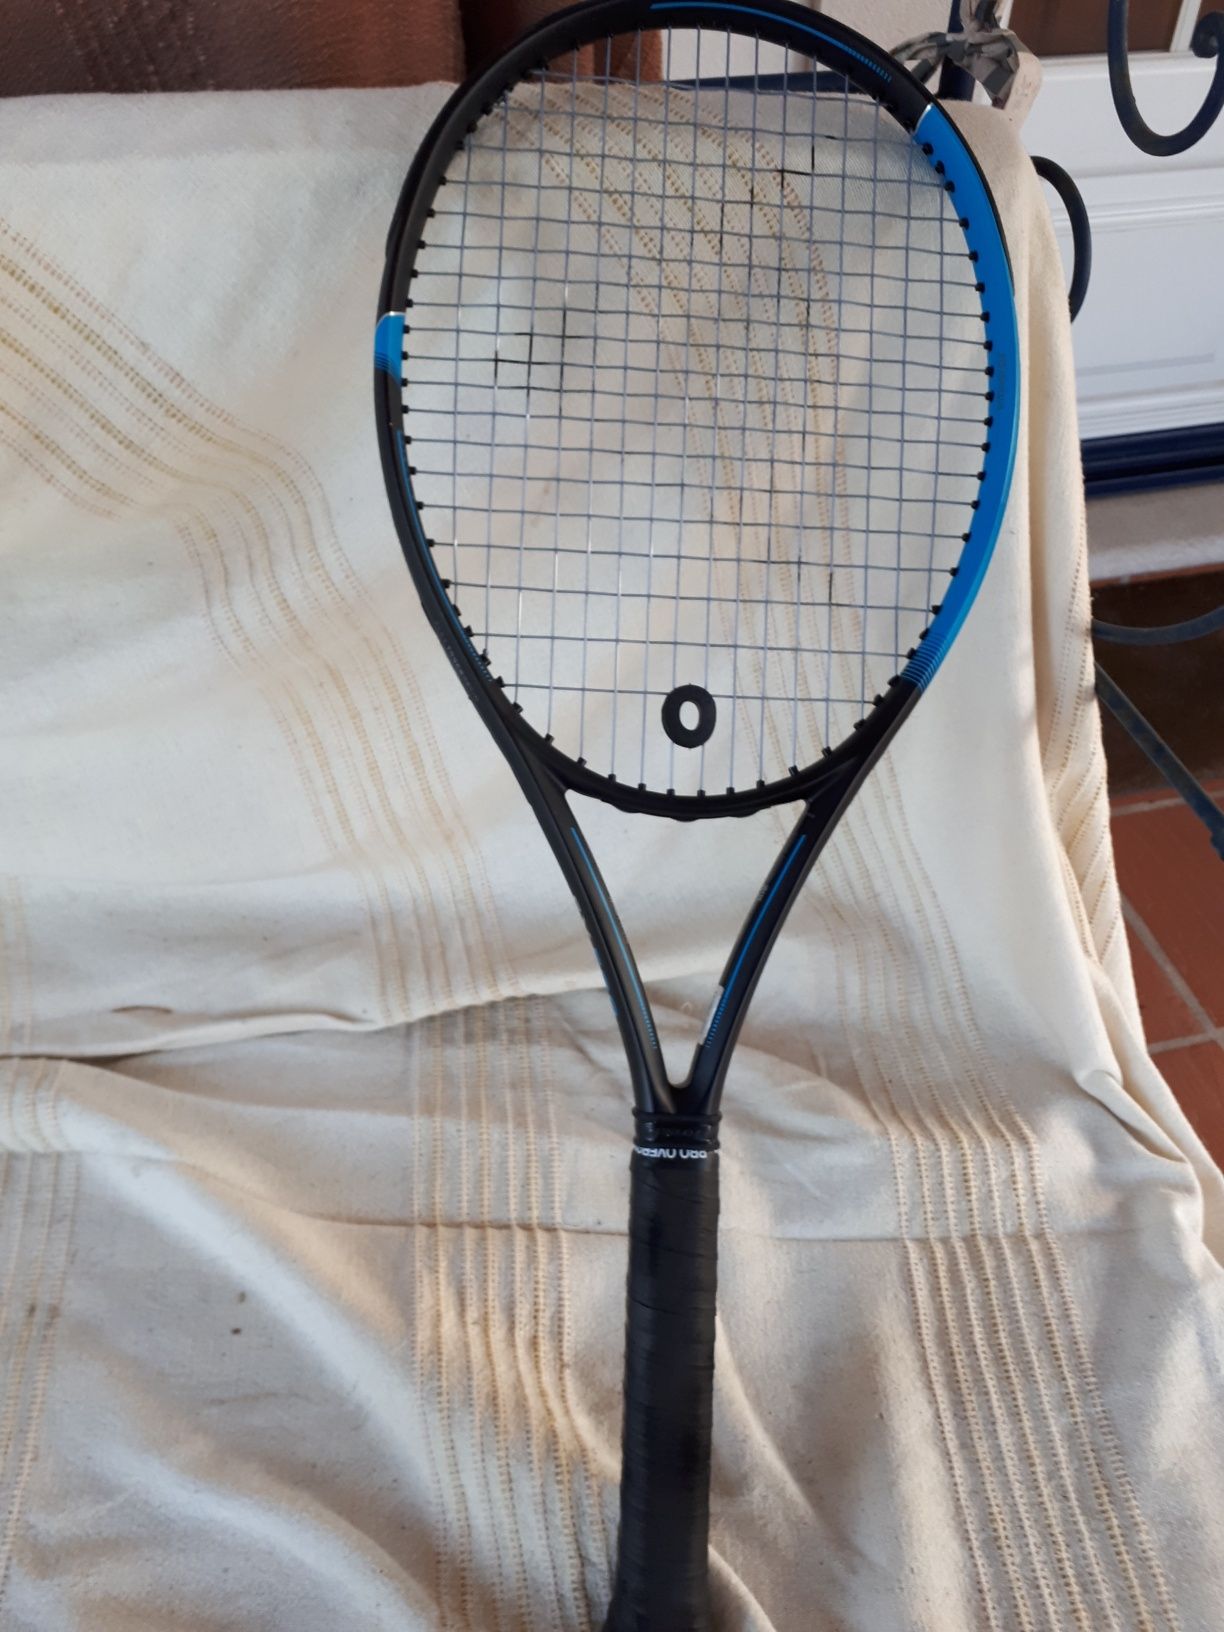 Raquete ténis Dunlop FX 500